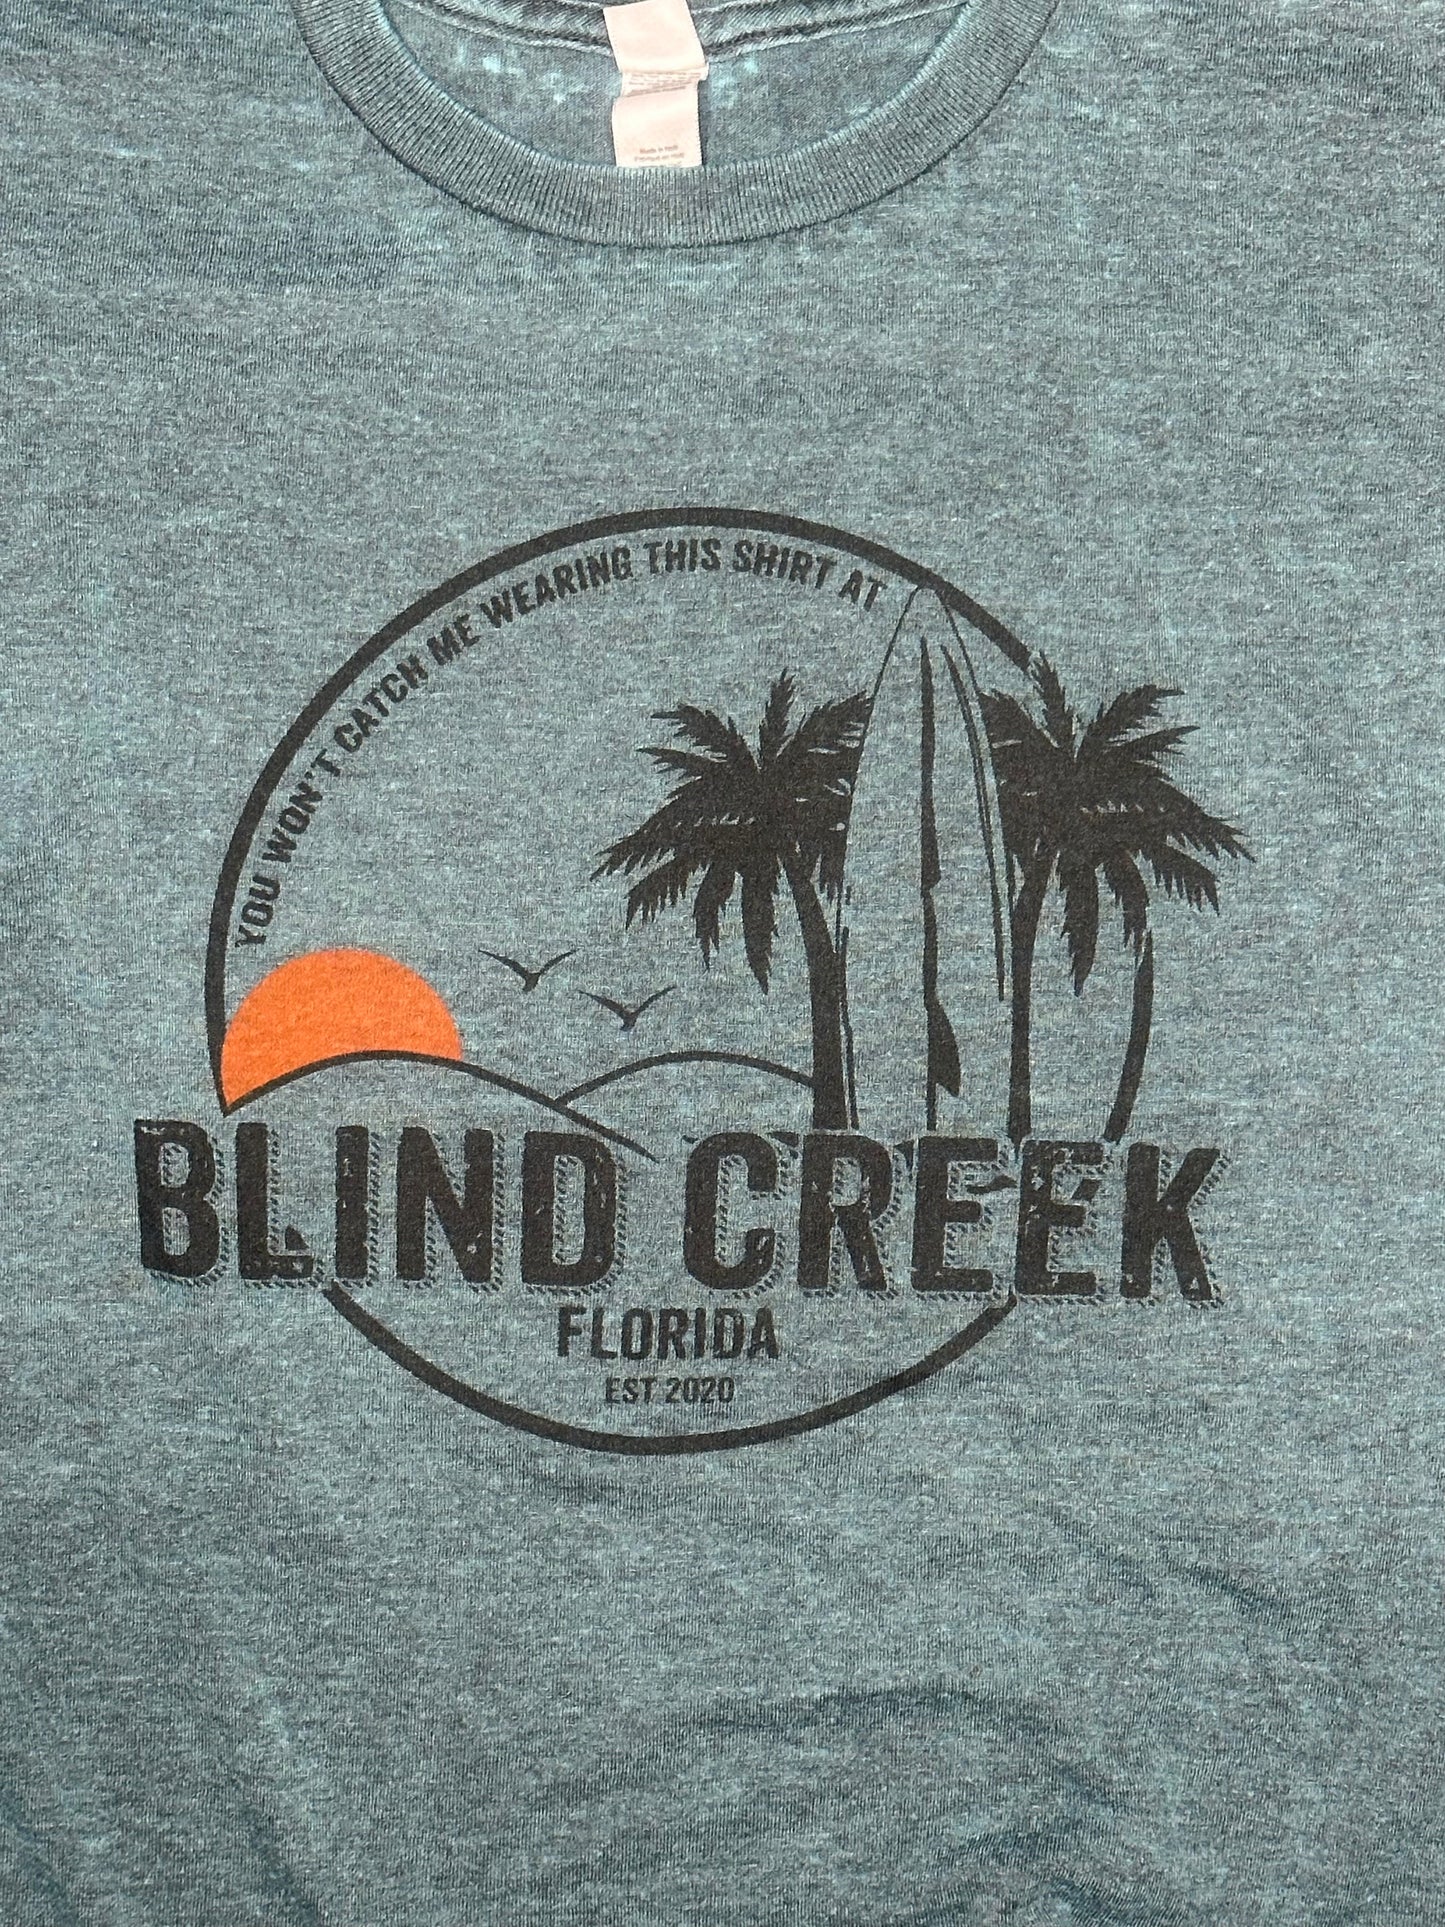 Blind Creek Tee